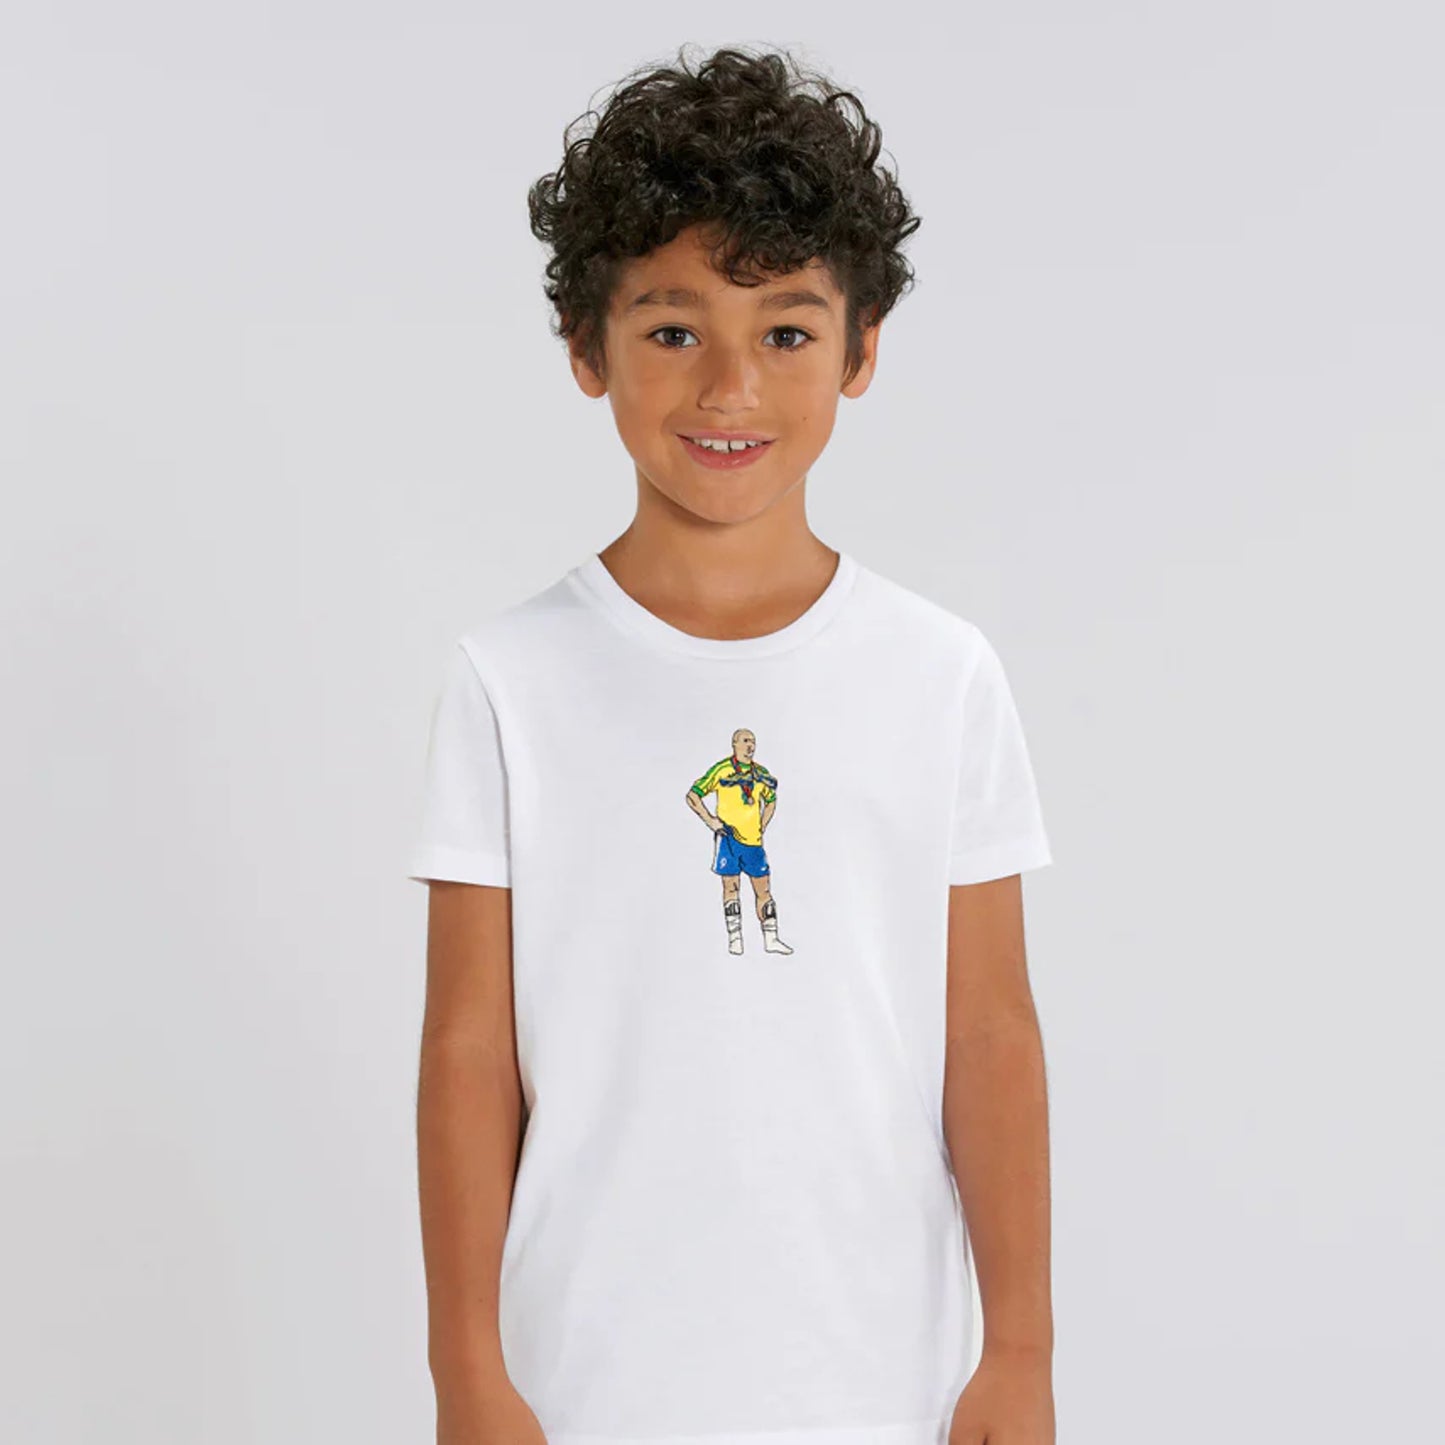 REEO DE JANEIRO KIDS Tシャツ - KIDS - ホワイト